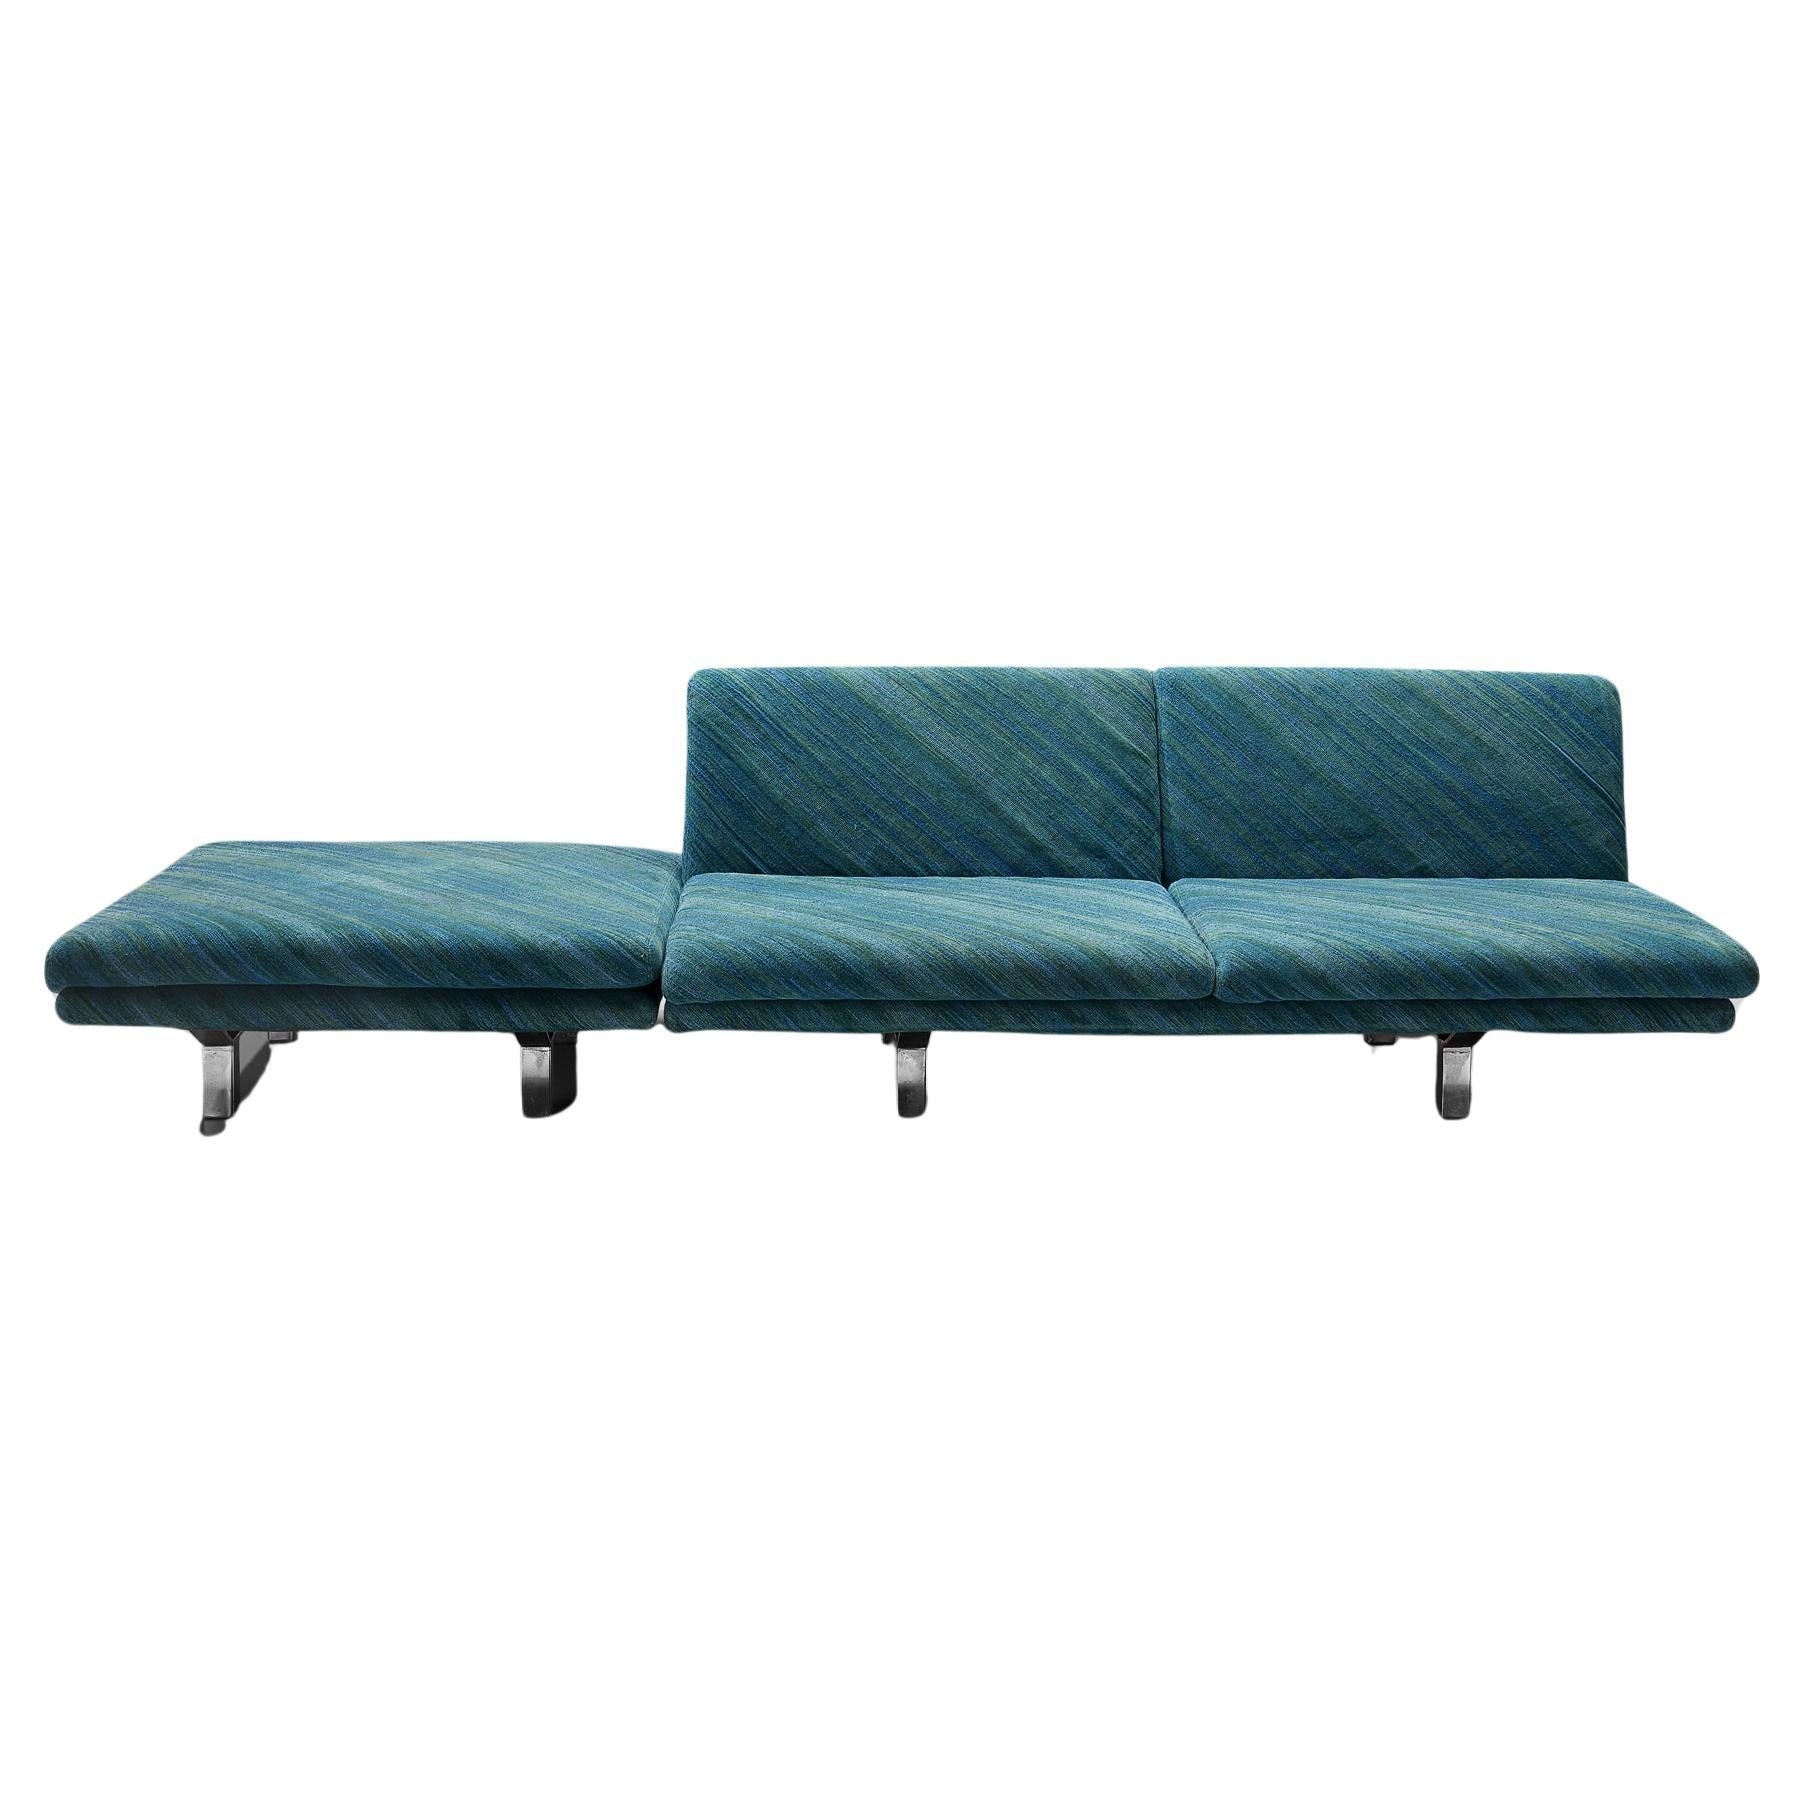 Saporiti, canapé deux places, ottoman, rembourré en tissu texturé vert-bleu, pieds en métal, Italie, années 1960

Canapé avec ottoman fabriqué par Saporiti. Ce canapé est conçu pour être épuré, élégant et attirer le regard. Il comporte trois sièges